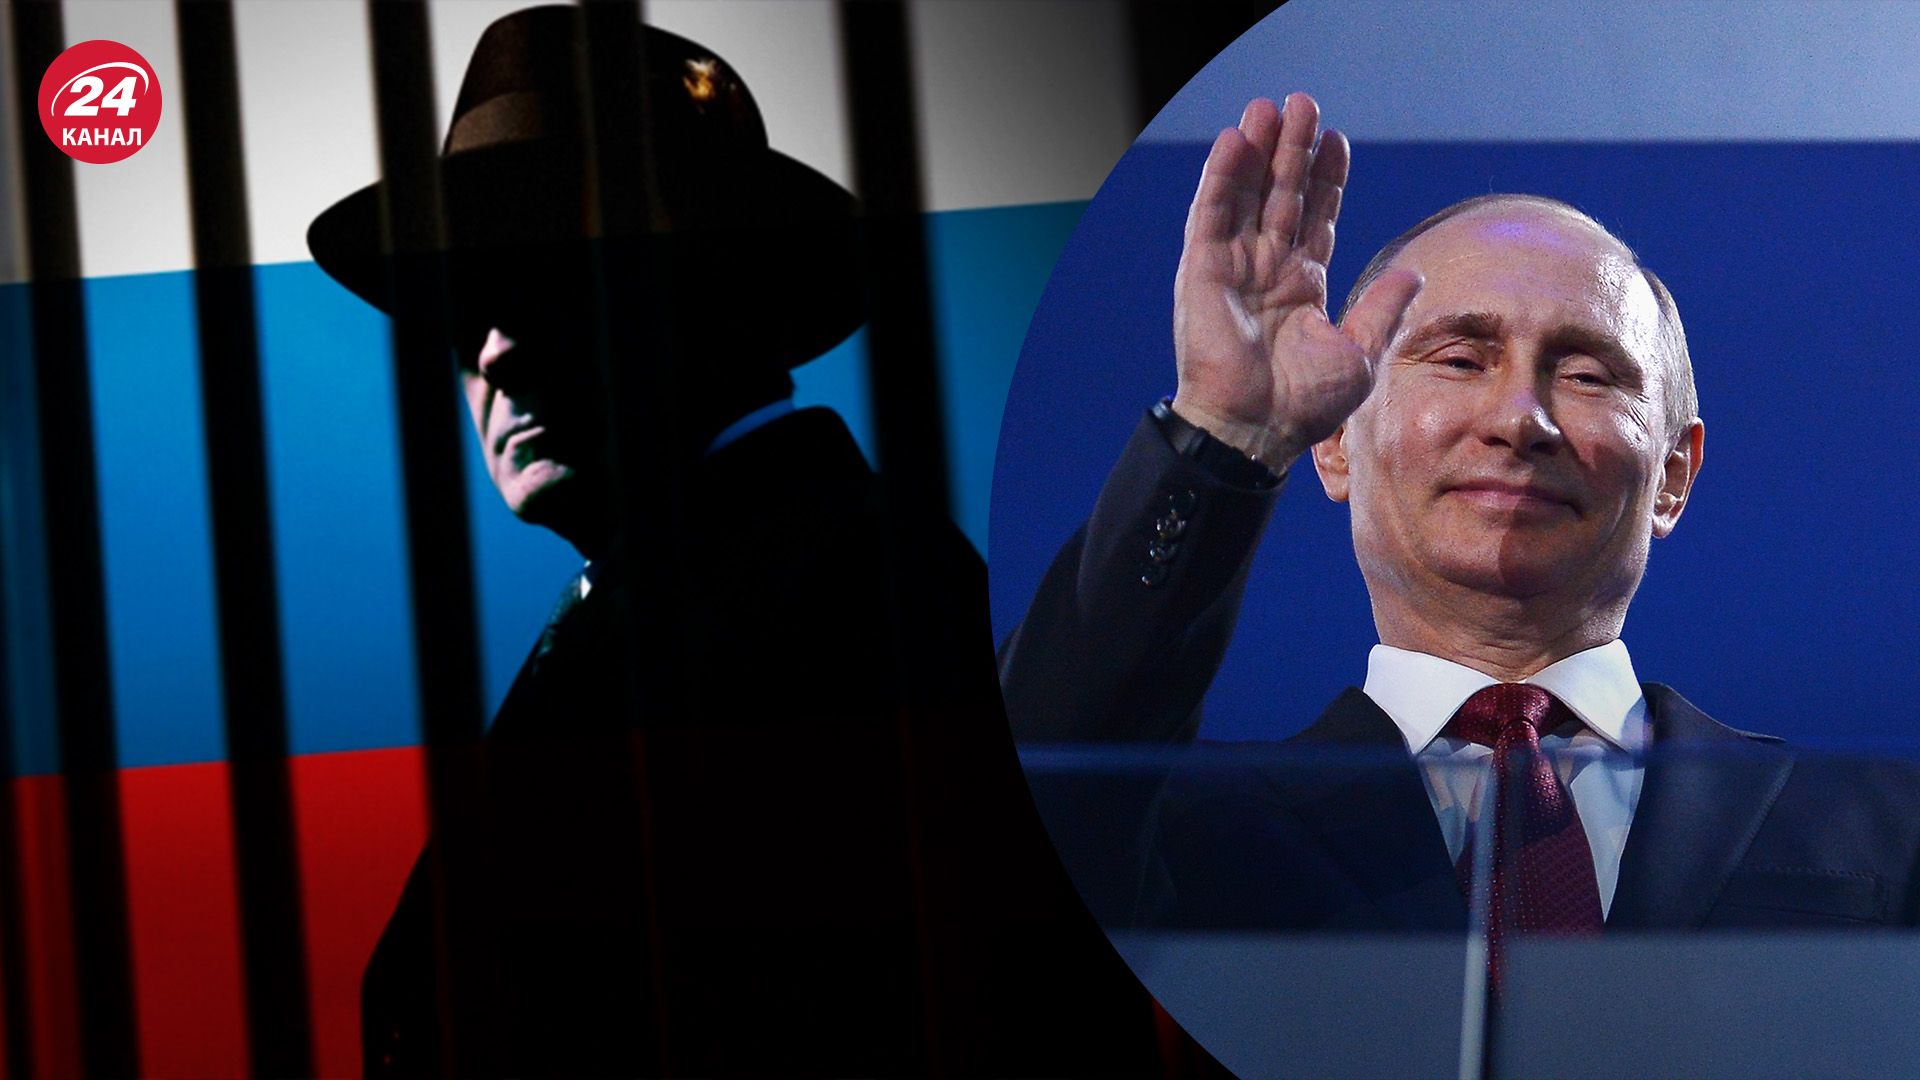 Як збільшилася кількість російських шпигунів за часів Путіна - скільки агентів у Кремля - 24 Канал